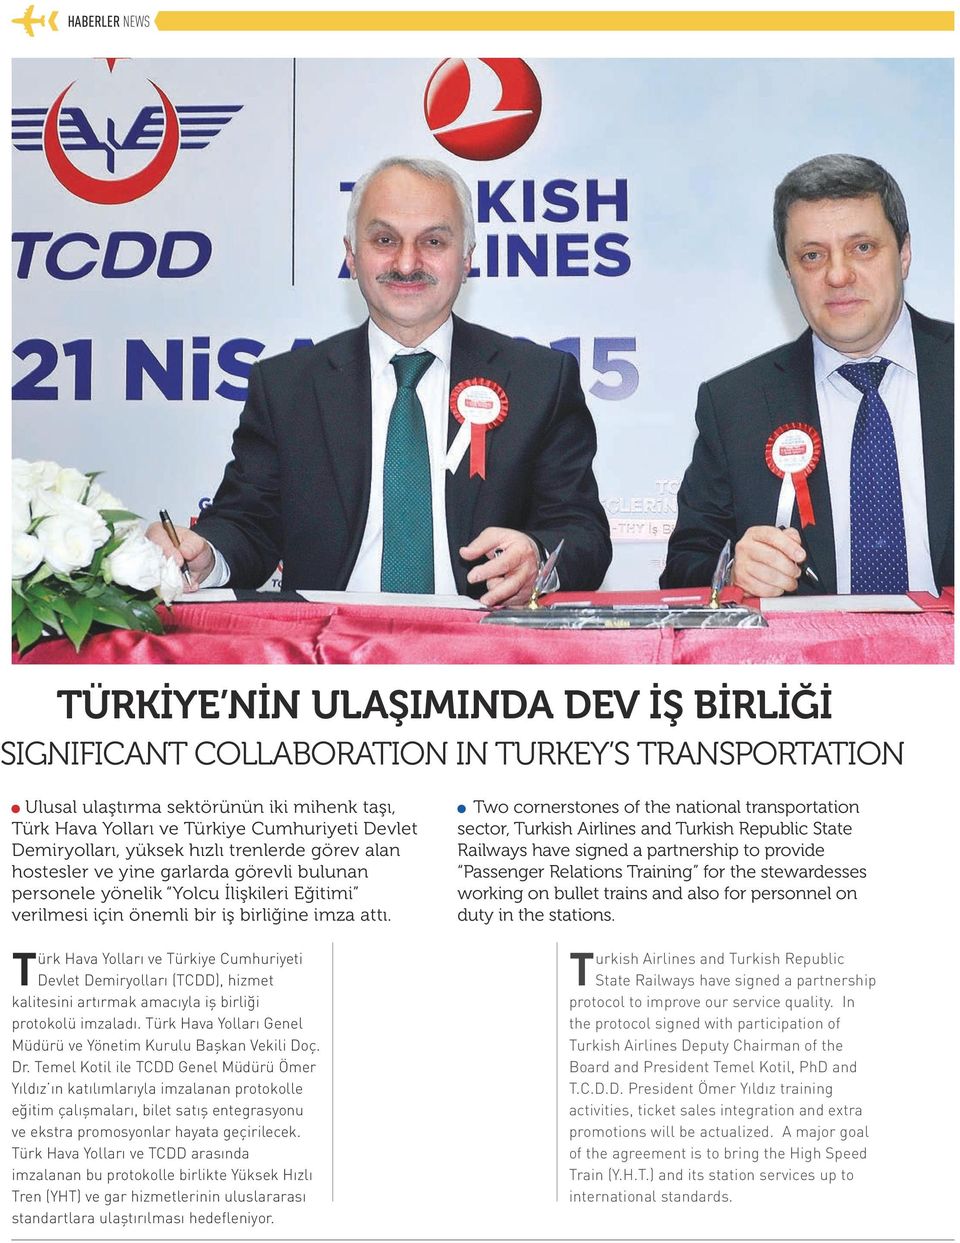 Türk Hava Yolları ve Türkiye Cumhuriyeti Devlet Demiryolları (TCDD), hizmet kalitesini artırmak amacıyla iş birliği protokolü imzaladı.